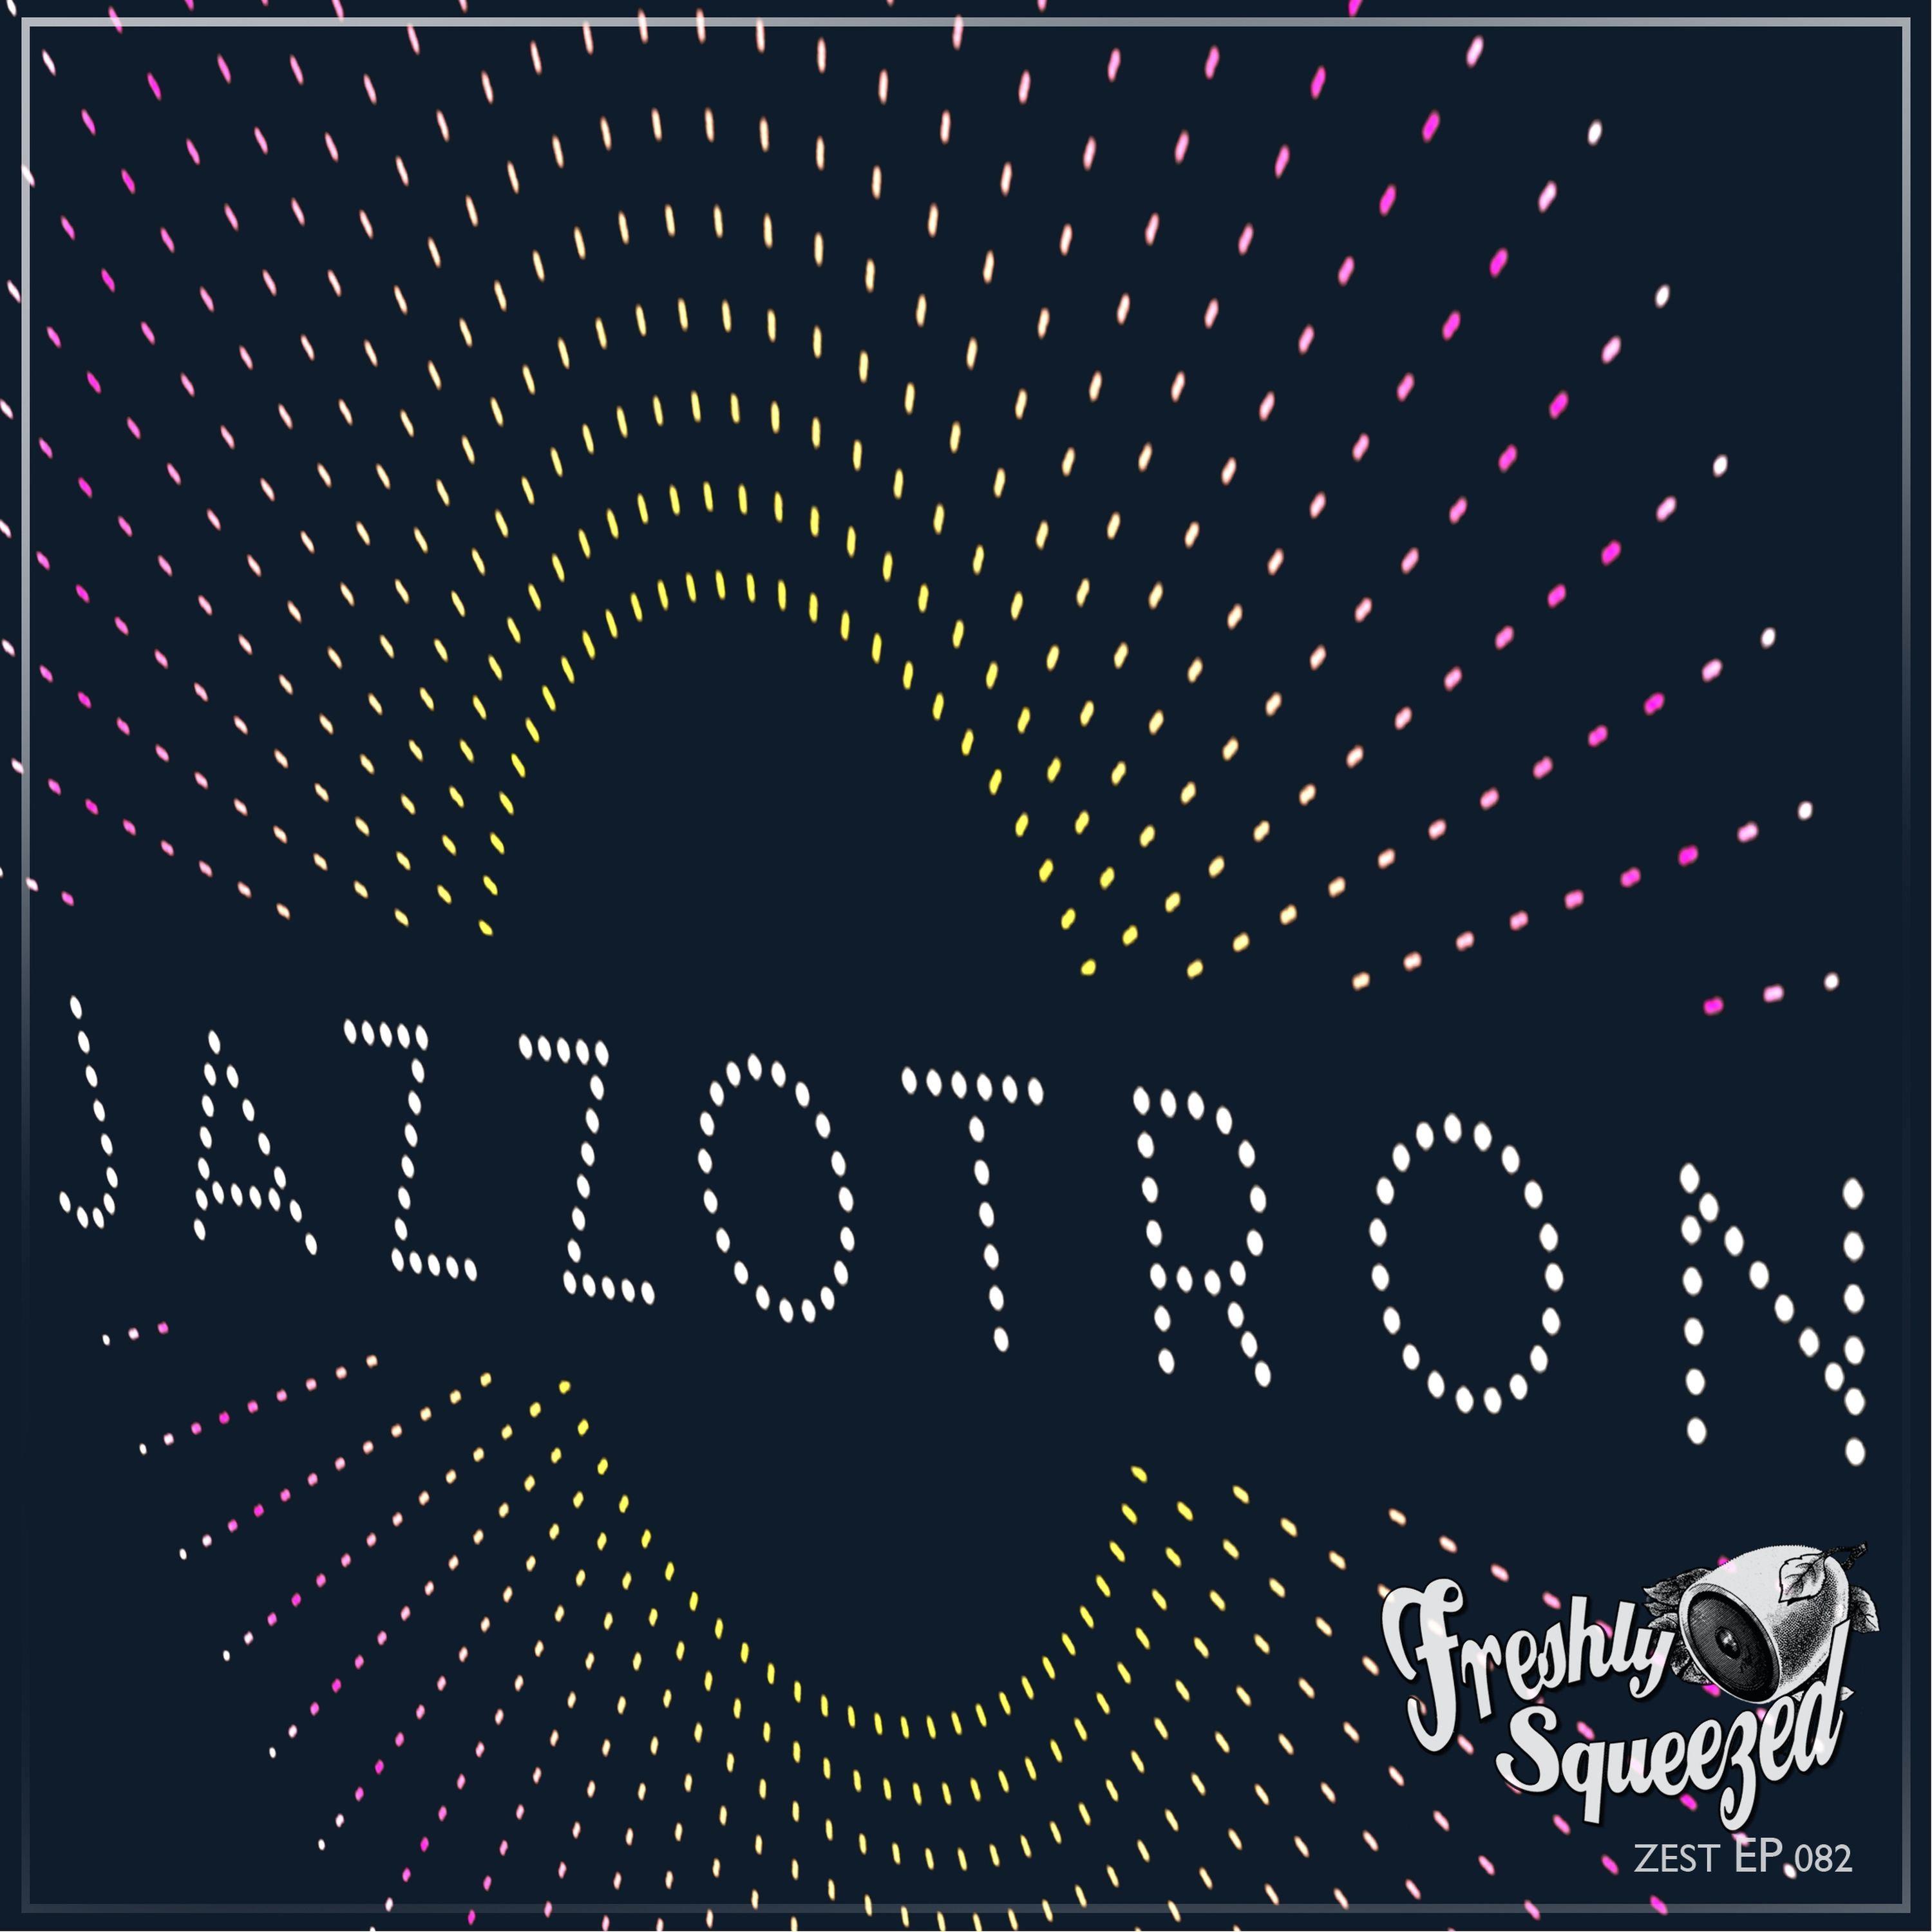 Jazzotron - Speakeasy